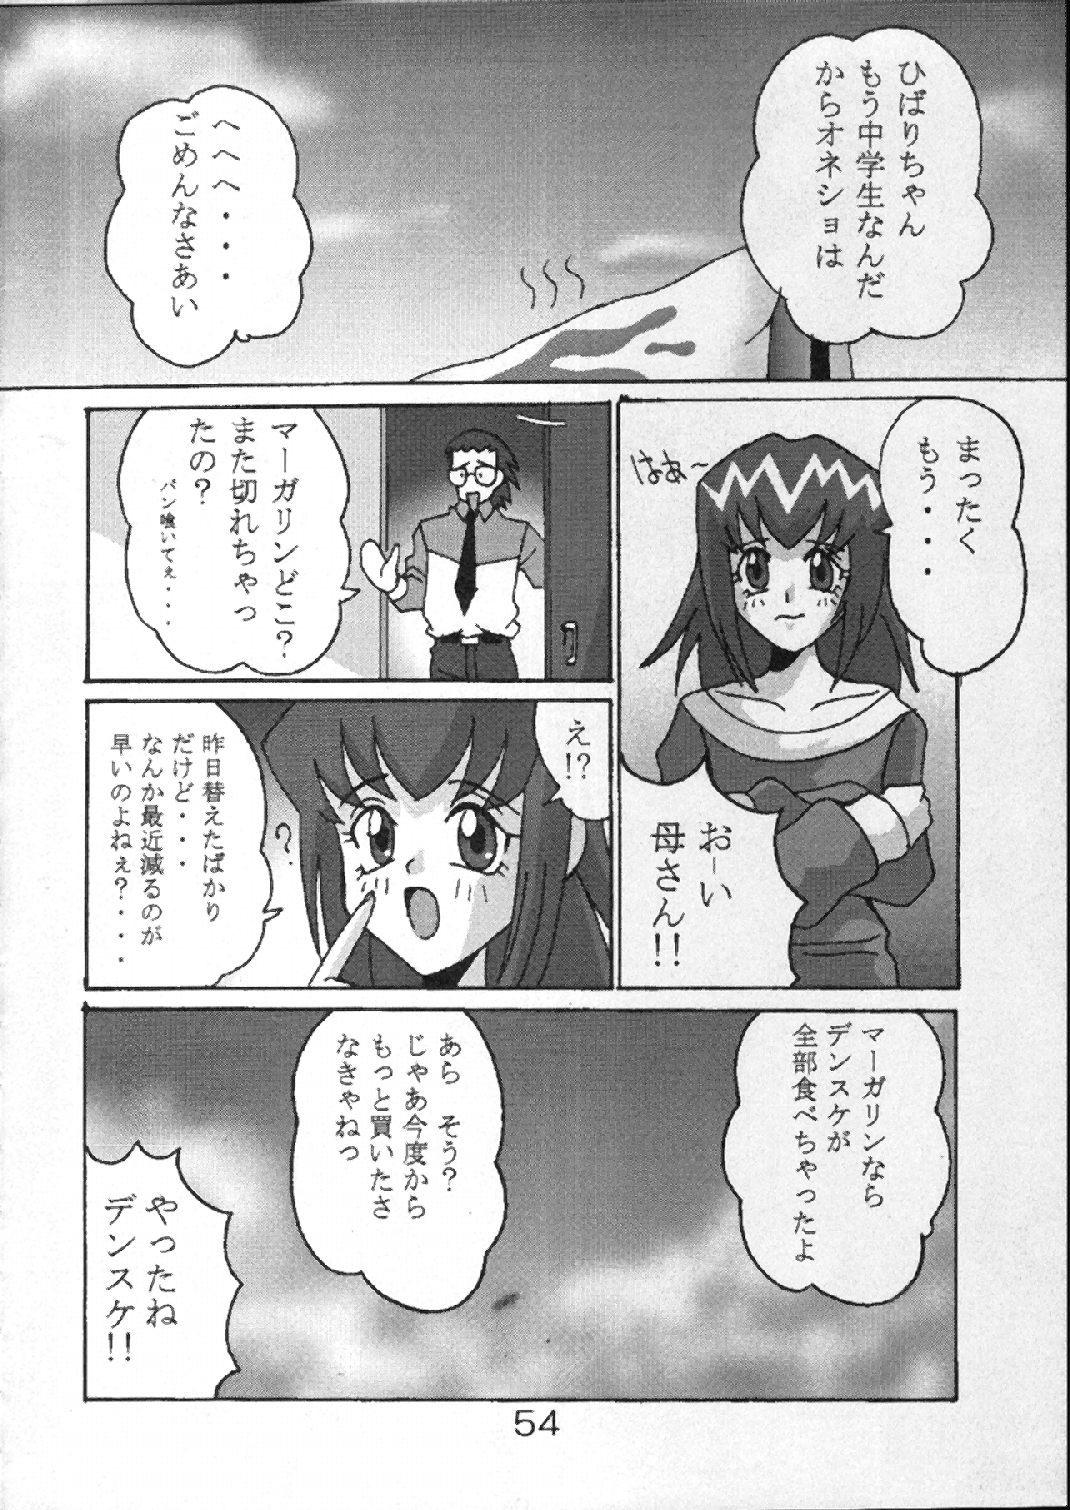 POV Buchizan - Akihabara dennou gumi Kare kano Anime - Page 54